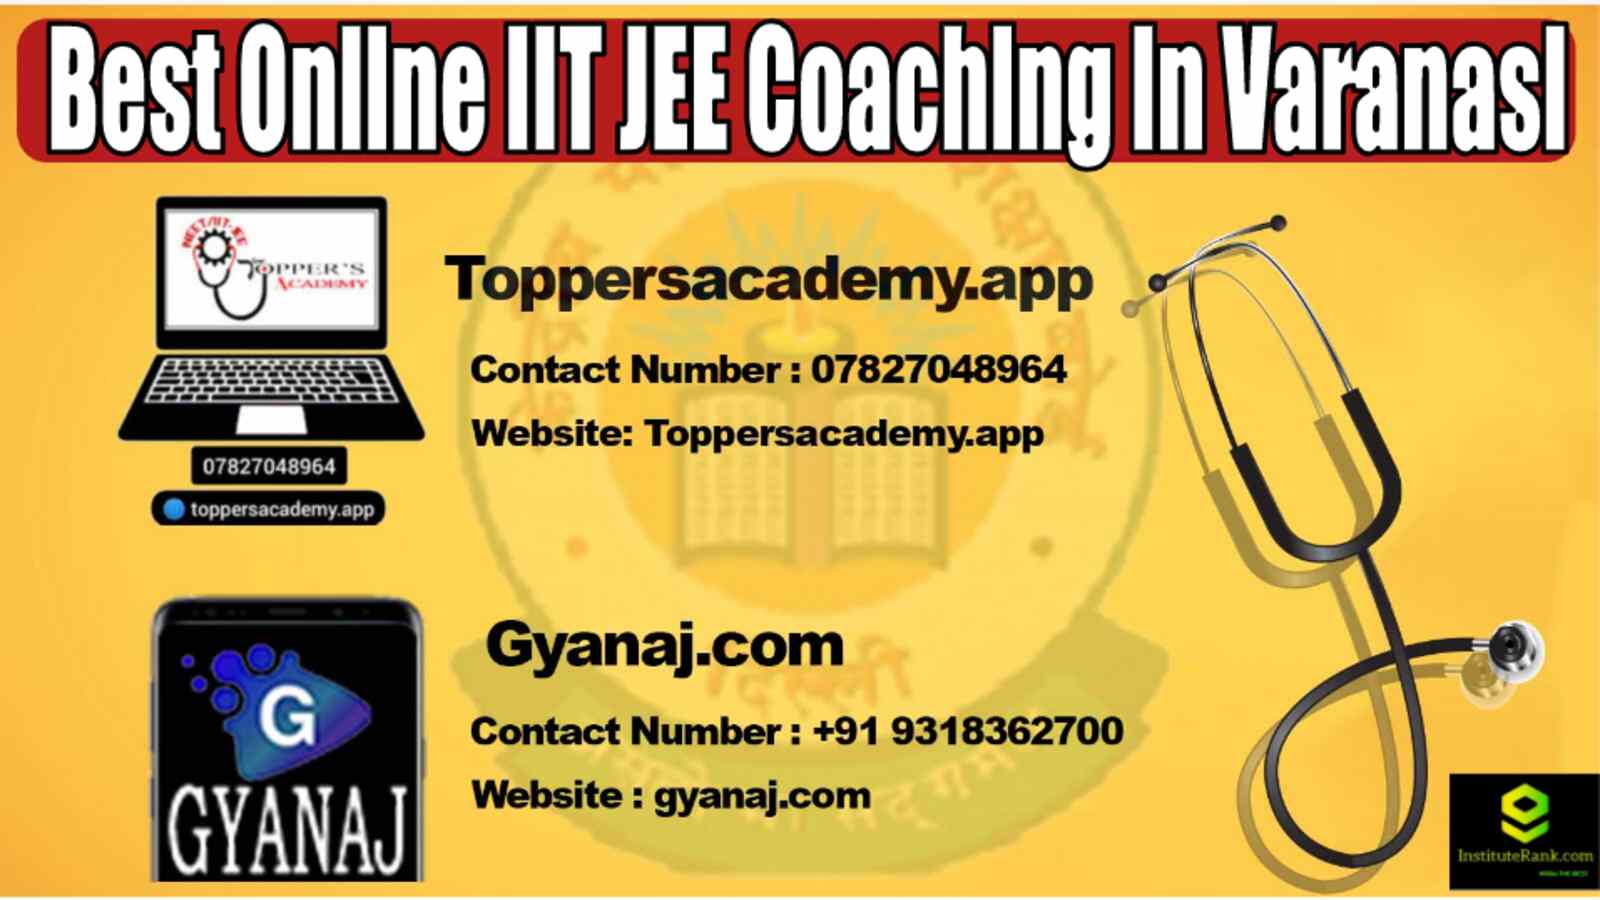 Best Online IIT JEE Coaching in Varanasi 2022